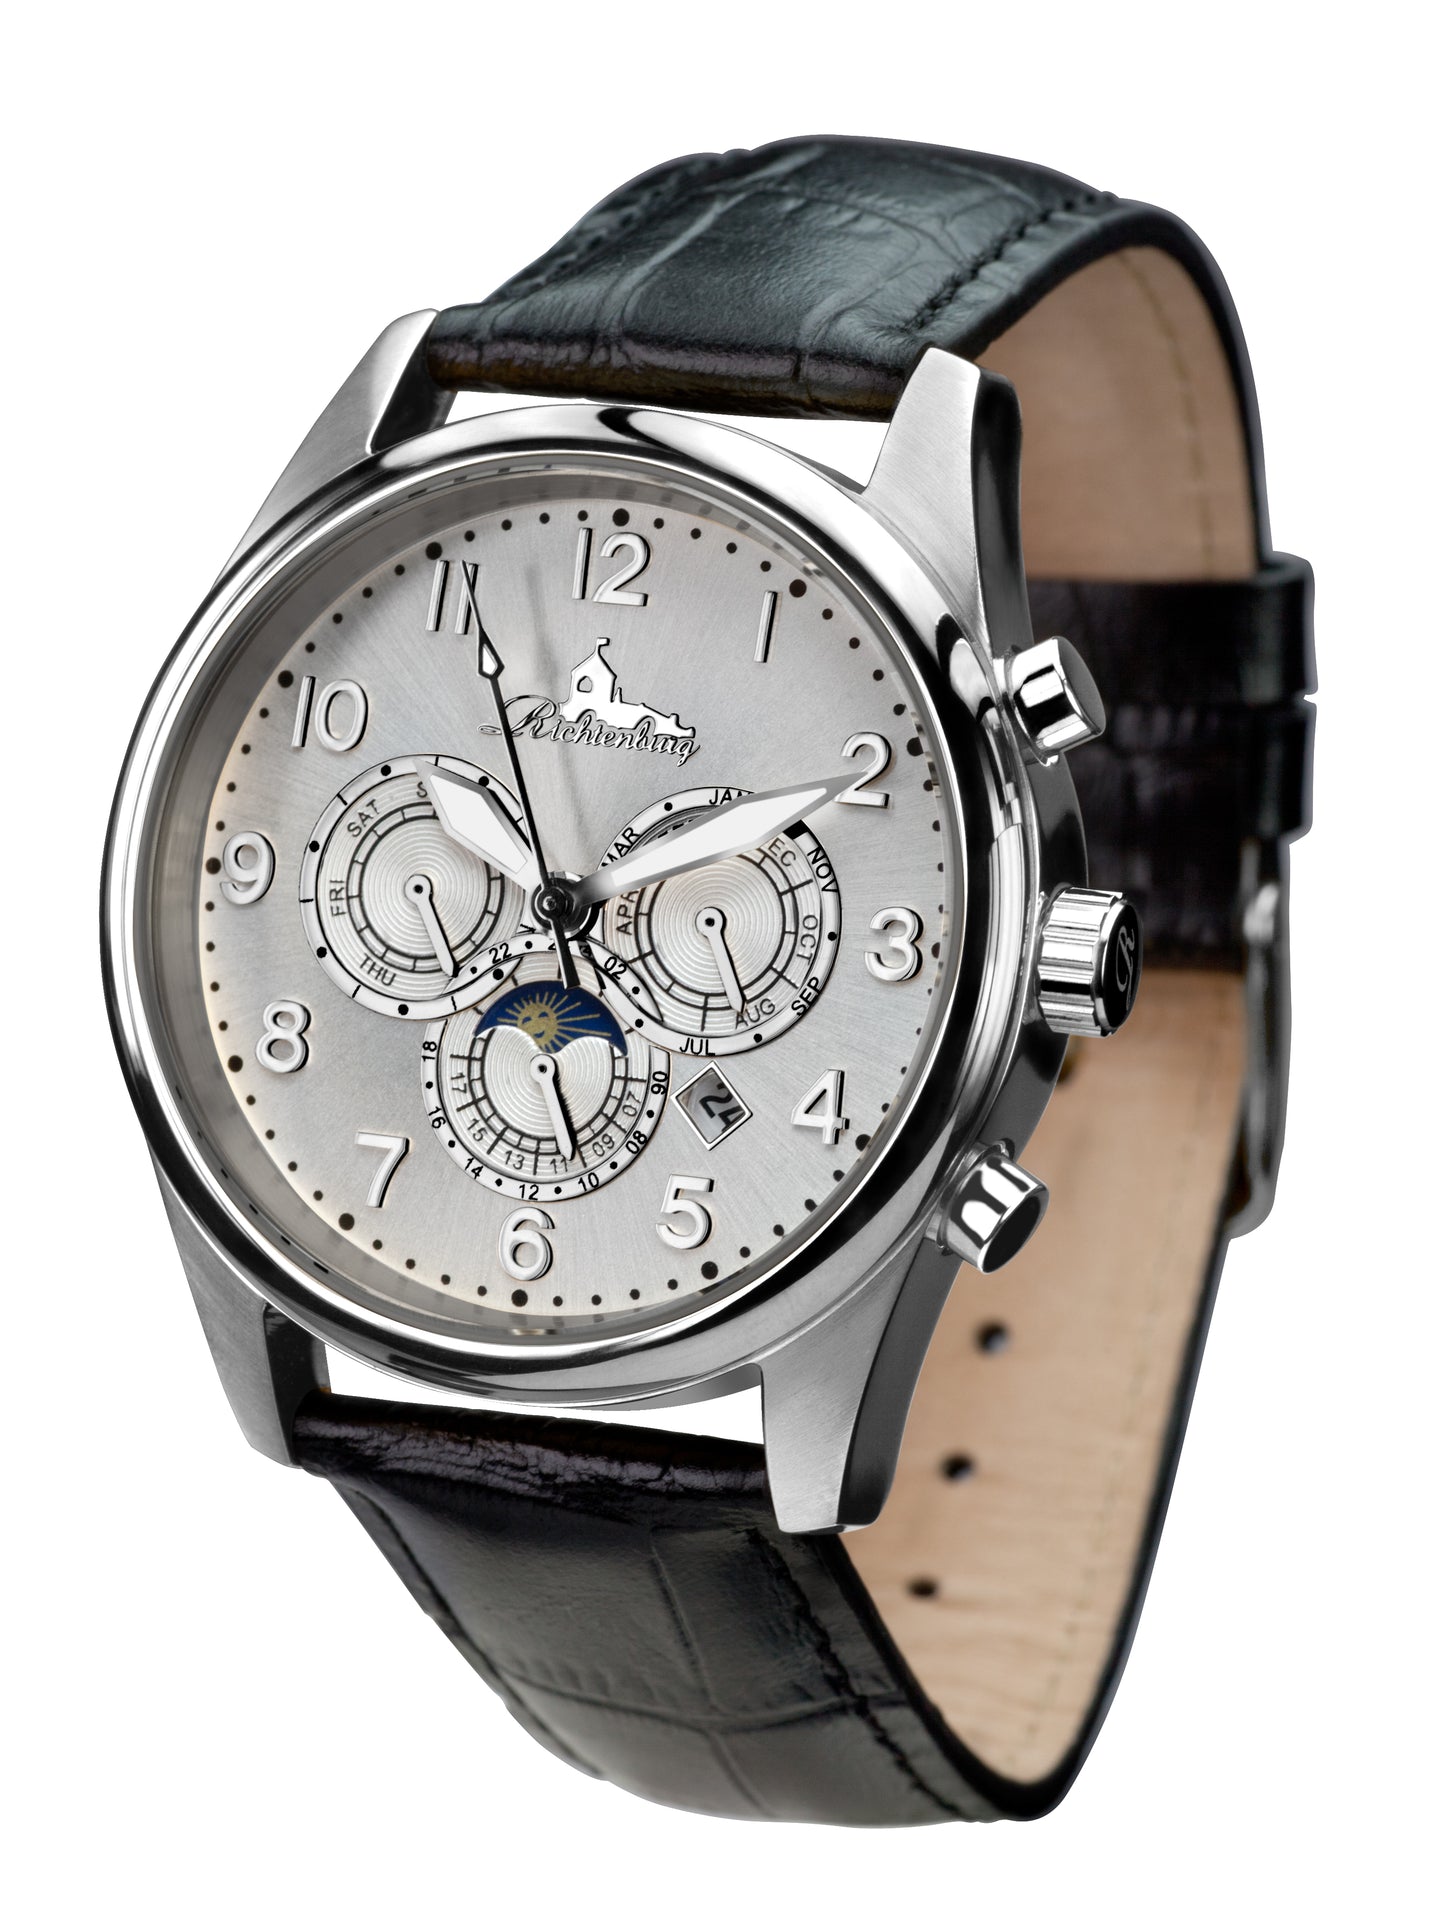 Automatic watches — Athen — Richtenburg — silver